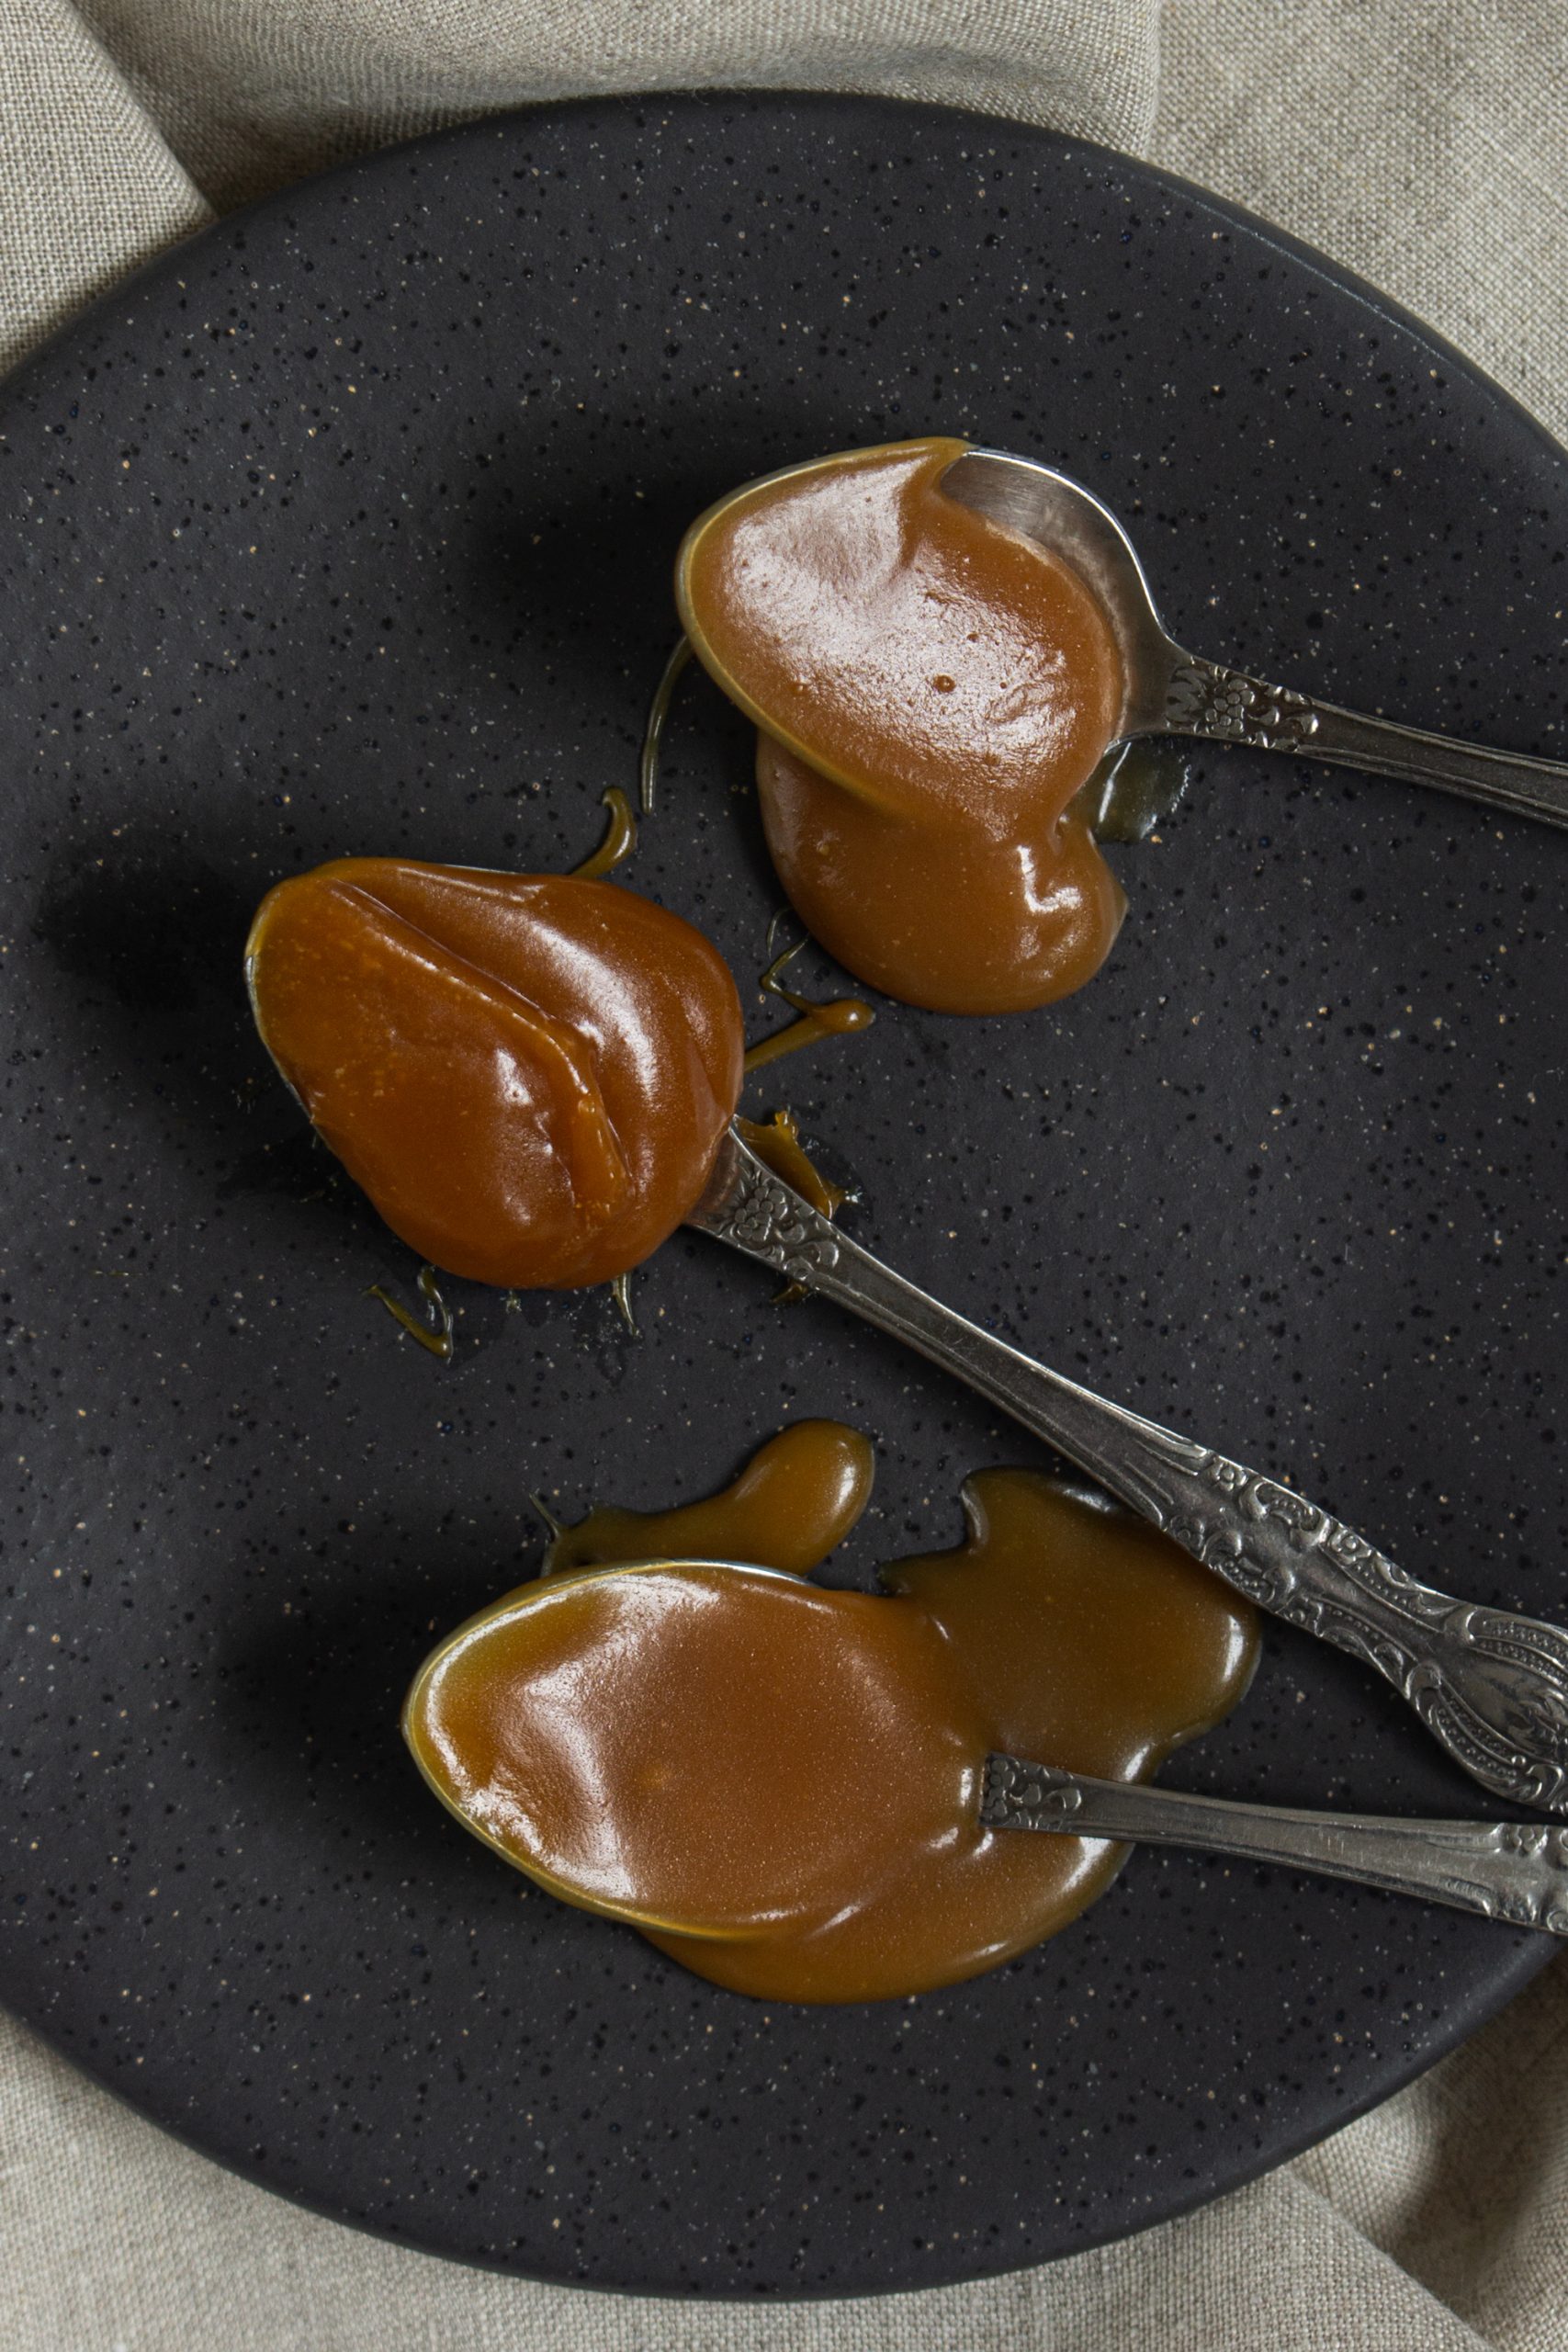 3 teaspoons of dry method caramel